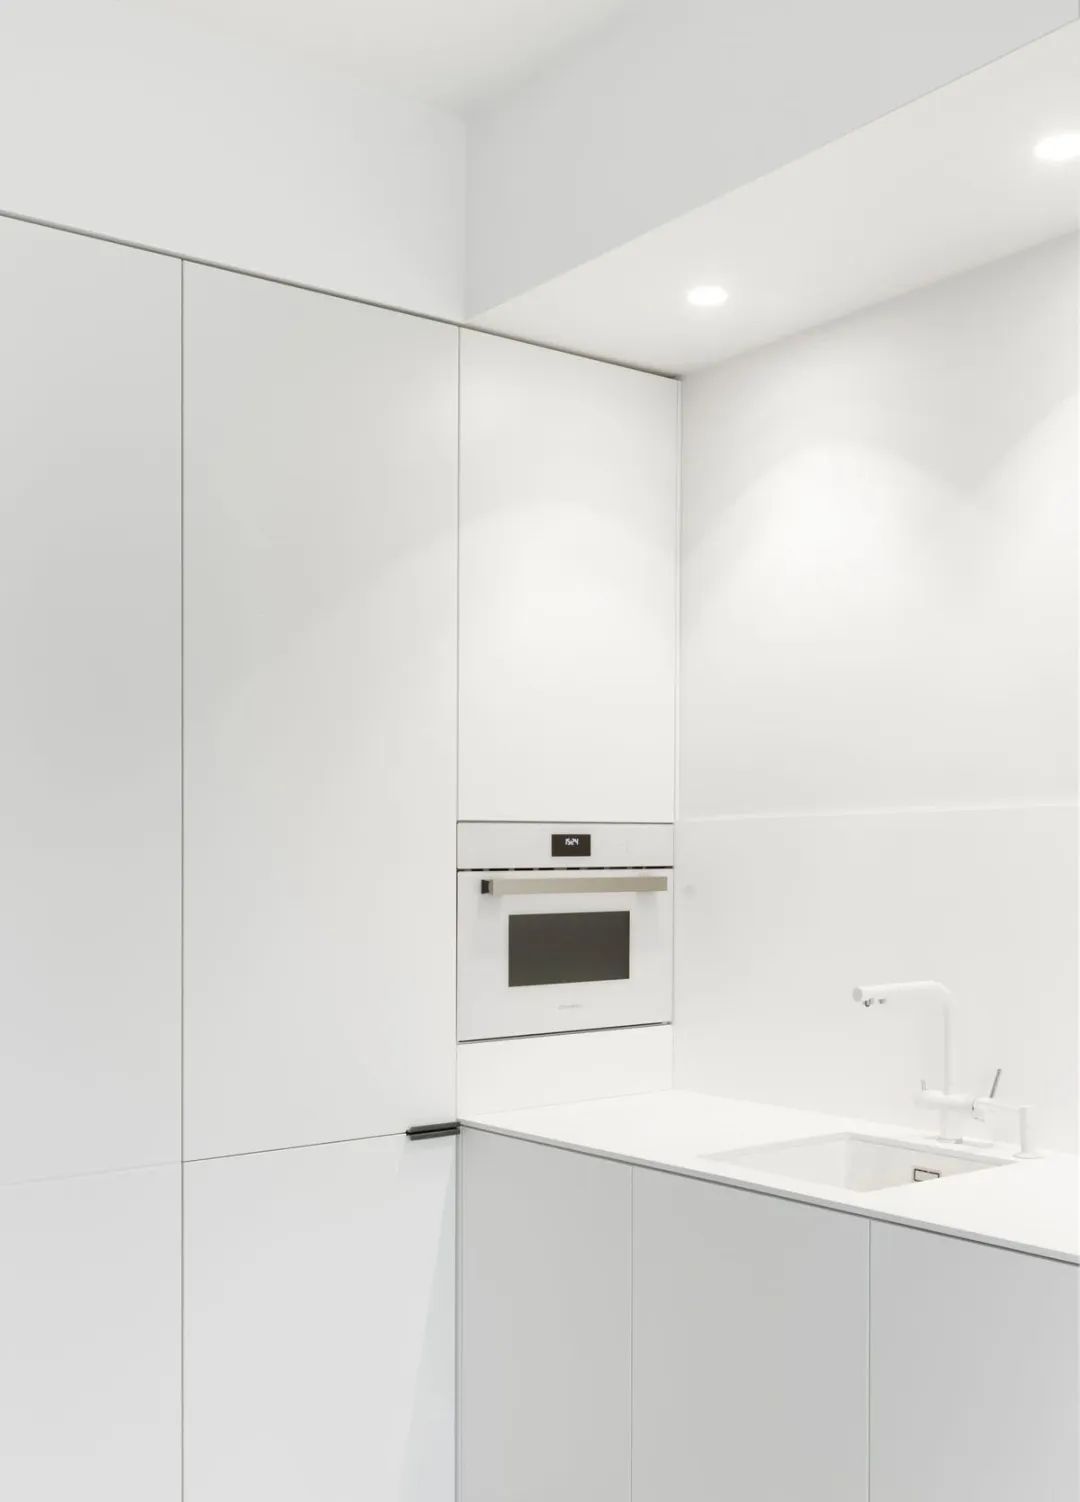 裝修案例簡歐風格公寓裝修效果圖-廚房